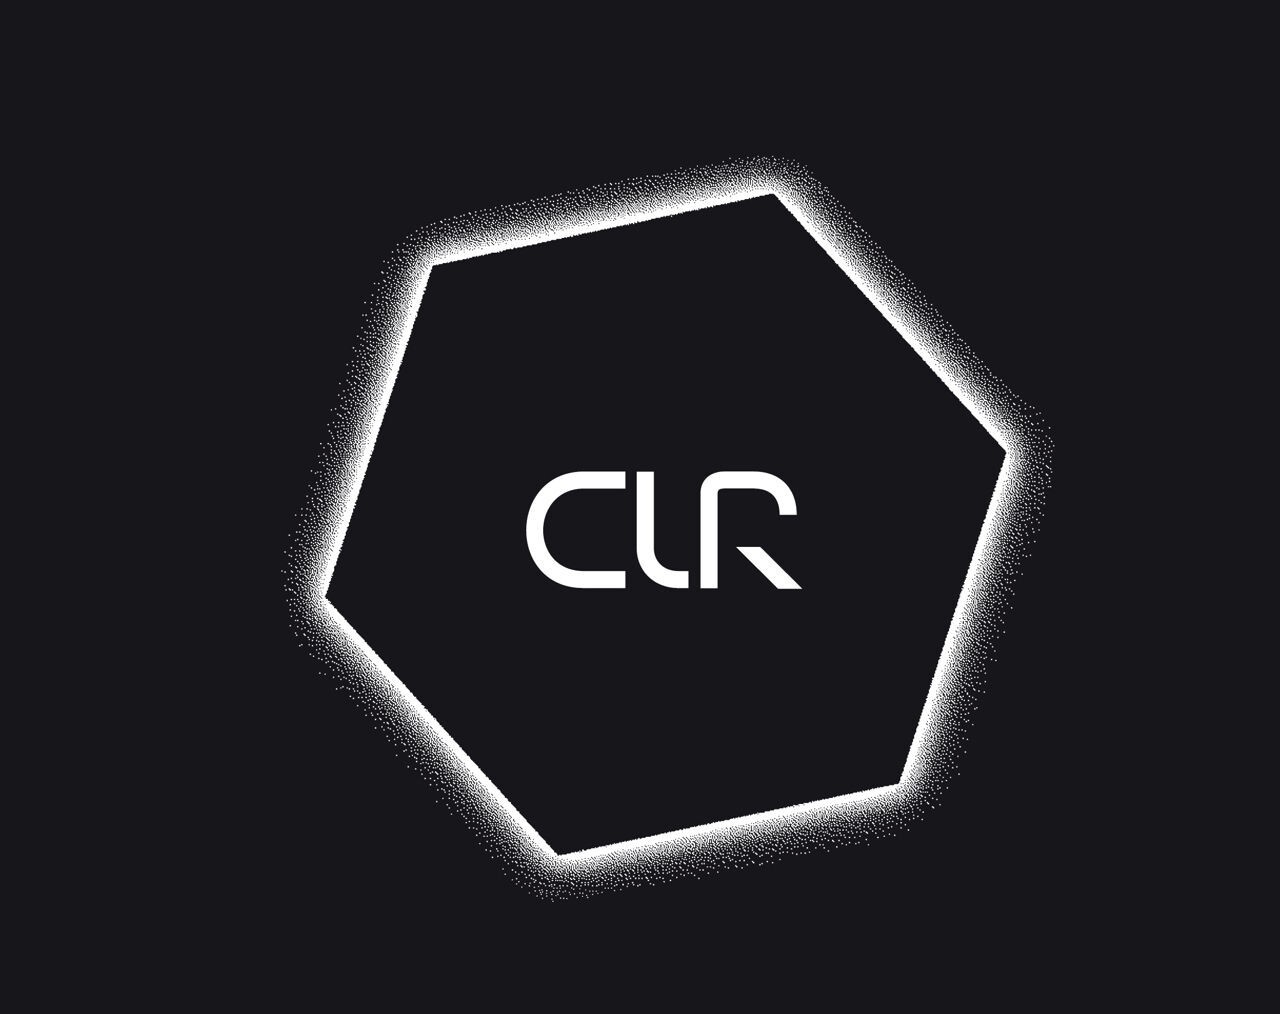 Средой выполнения c. CLR логотип. Среда CLR. CL'R логотип. Mixcloud logo.